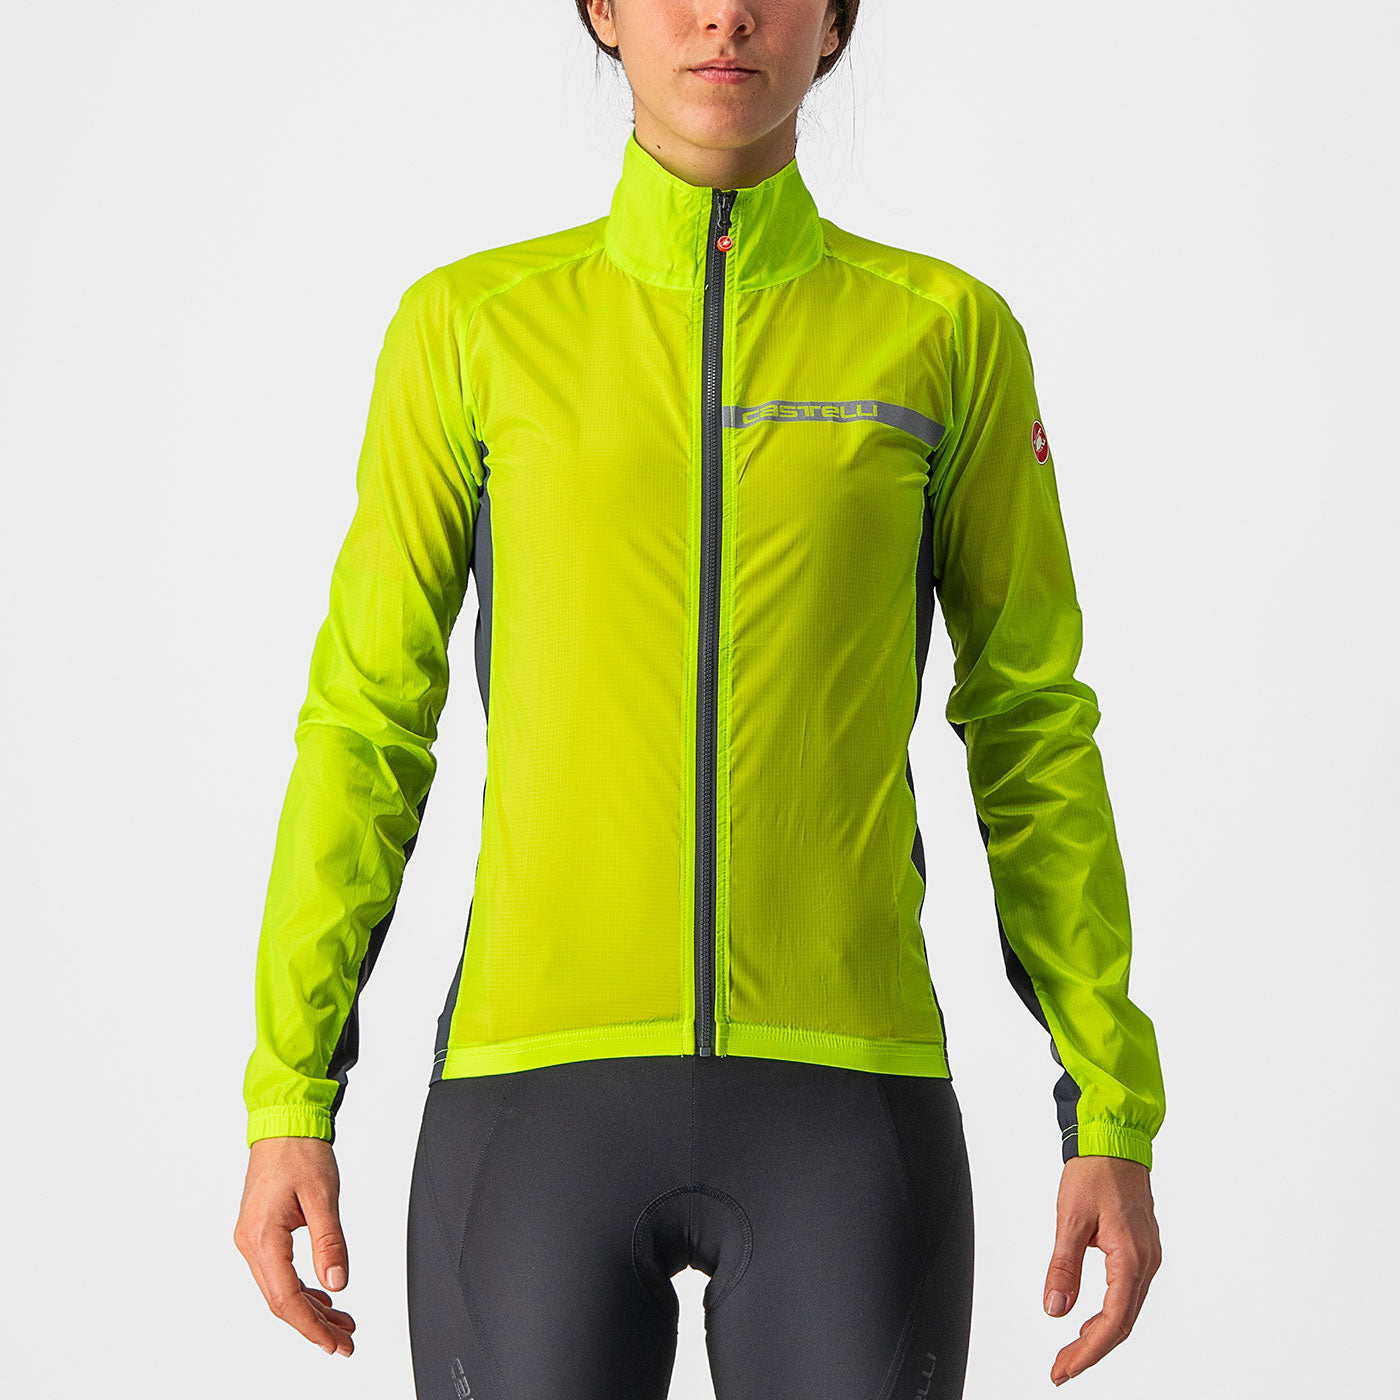 GORE WEAR Women's Waterproof Cycling Jacket